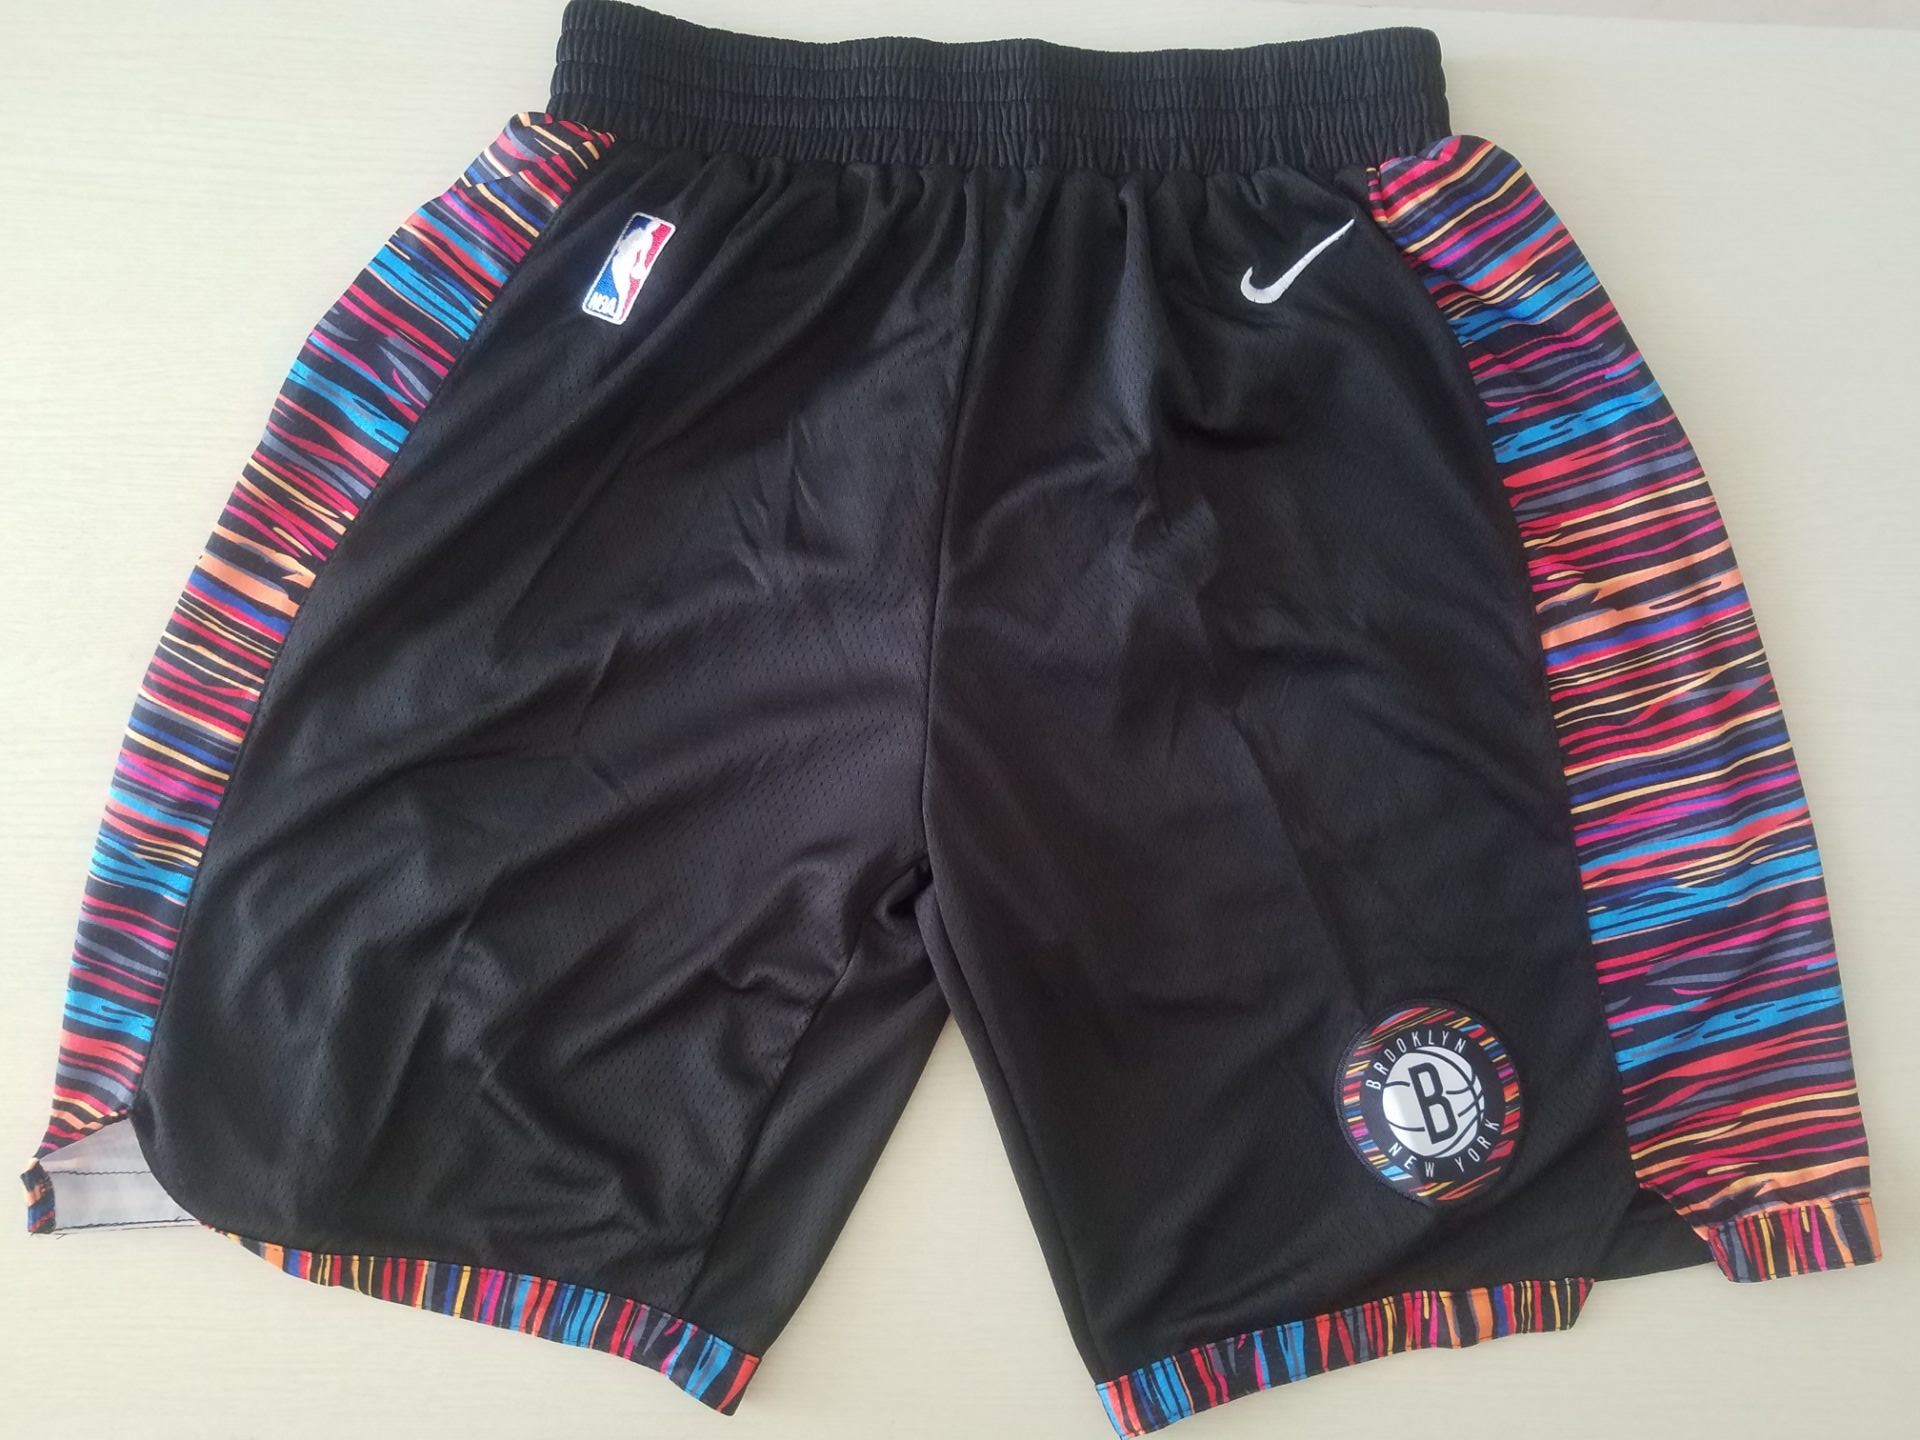 Youth NBA Nike Brooklyn Nets black shorts